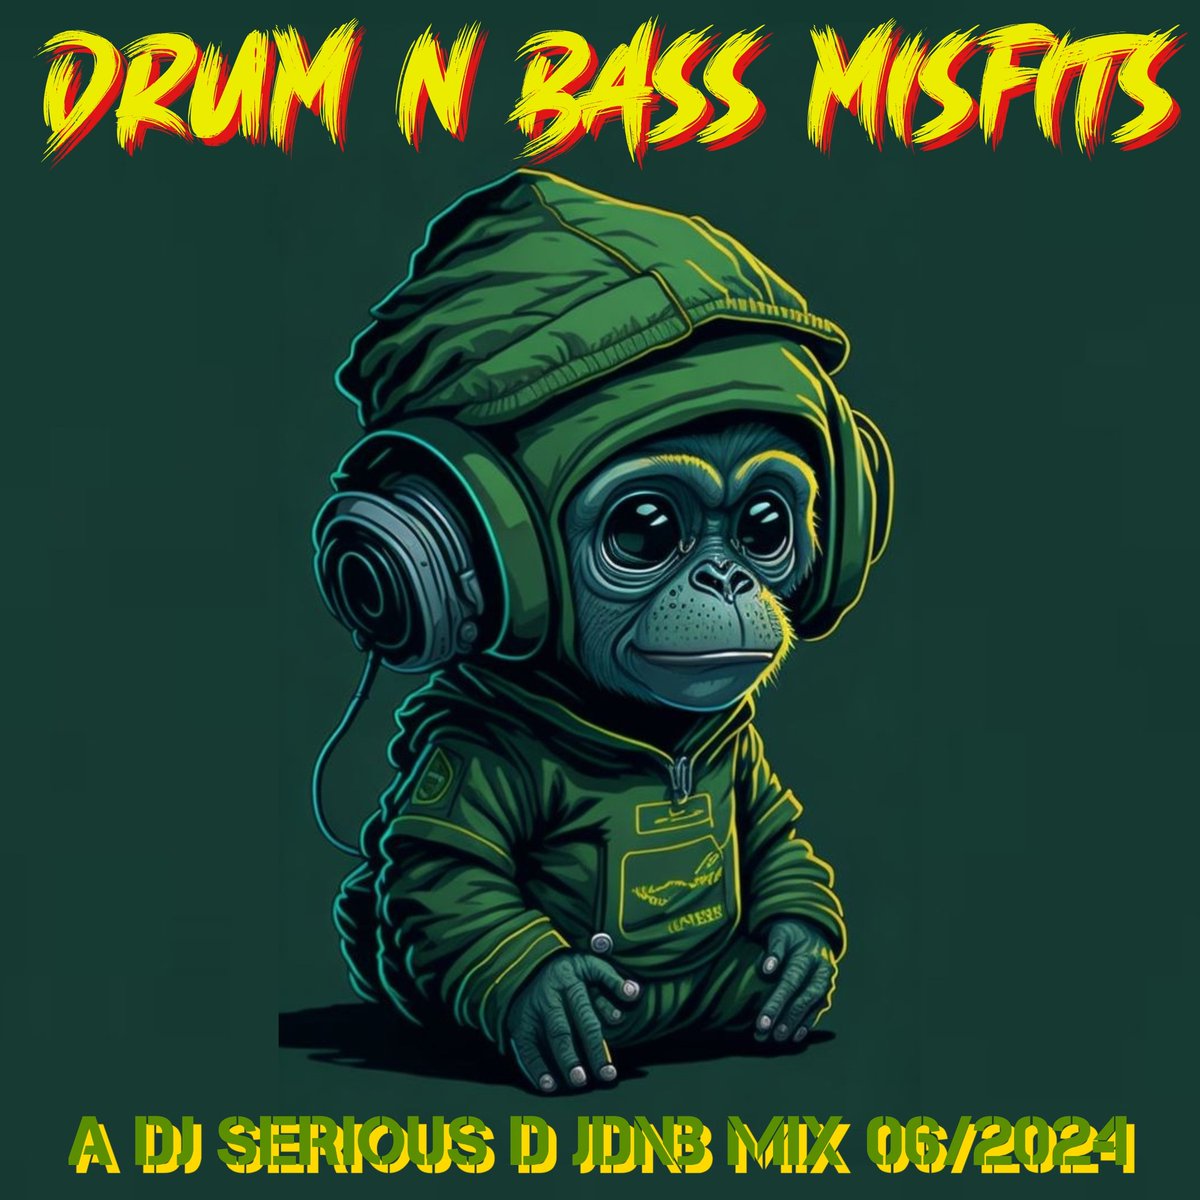 Behold - The #drumnbass Misfits! A nu #jdnb session here and now! 🧞🔊🎧🎶
#djseriousd #djmixes #djs
#dnbjpn #dnb #dnbdj
#drumandbass #junglist
#drum #bass #jungle #dj
#nowplaying #MusicIsLife
#music #festivals #rave
#ようこそ #日本人 #トランとベース #音楽 #友人 👇🎧